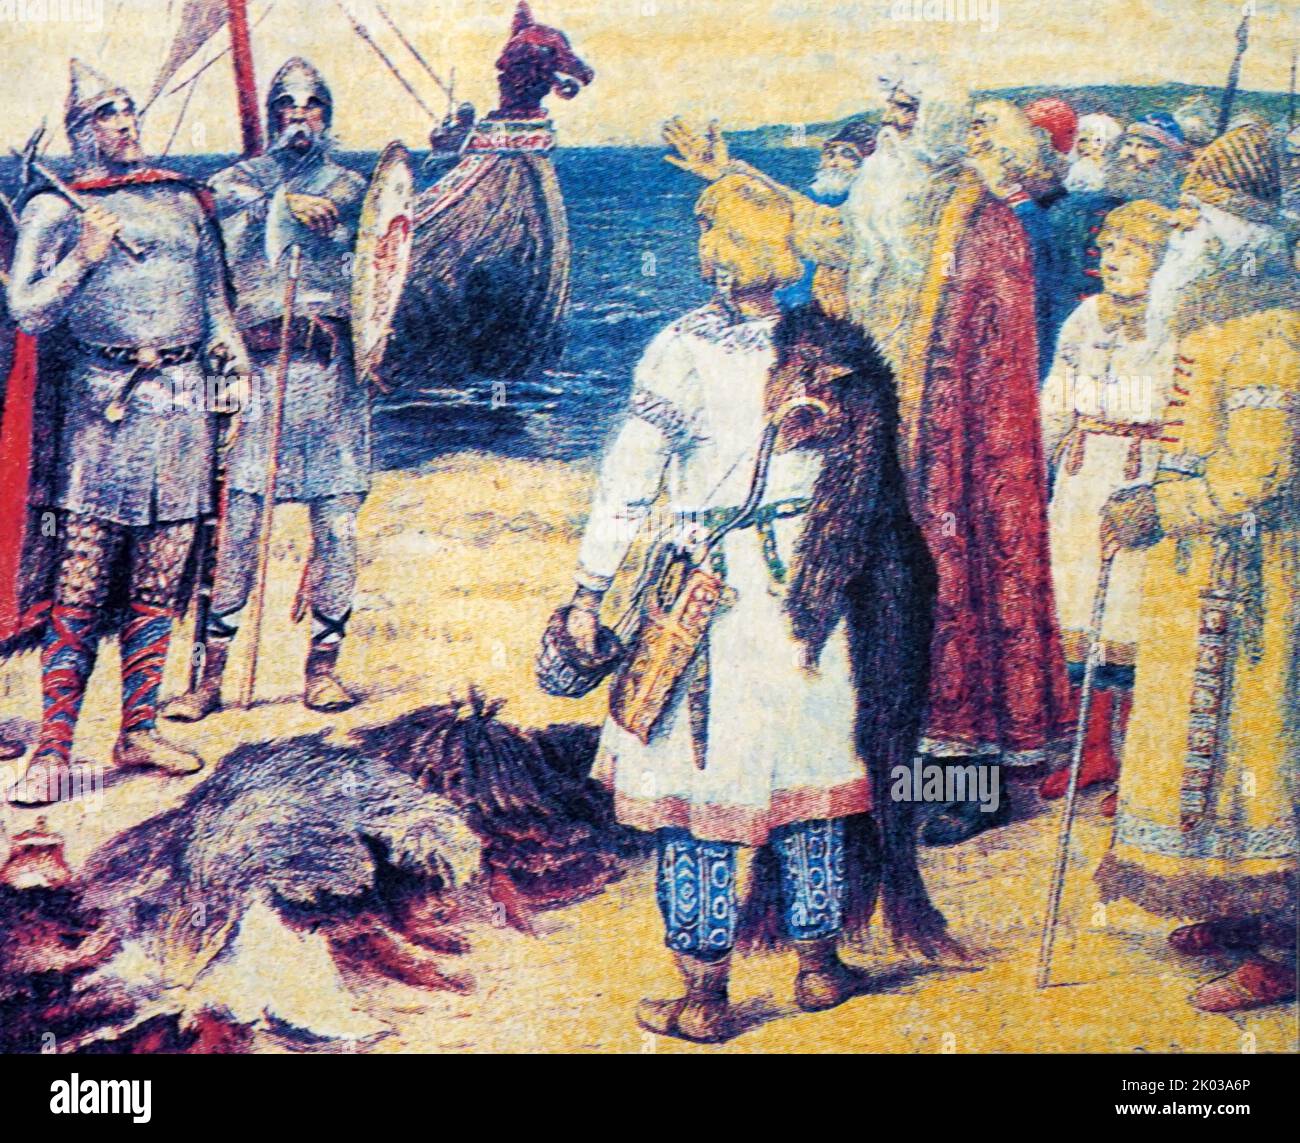 L'arrivo dei Varangiani in Russia. I Varangiani o Varyag erano il nome dato dai Greci, dal popolo di Rus, e da altri ai Vichinghi. Tra il 9th ° e 11th ° secolo, i Varengiani governarono lo stato medievale di Kievan Rus', si stabilirono tra molti territori della Bielorussia moderna, Russia, e Ucraina, e formarono la Guardia Varangiana bizantina. Secondo la Cronaca primaria di Kievan del 12th° secolo, un gruppo di Varangiani conosciuto come Rus si stabilì a Novgorod nel 862 sotto la guida di Rurik. Foto Stock